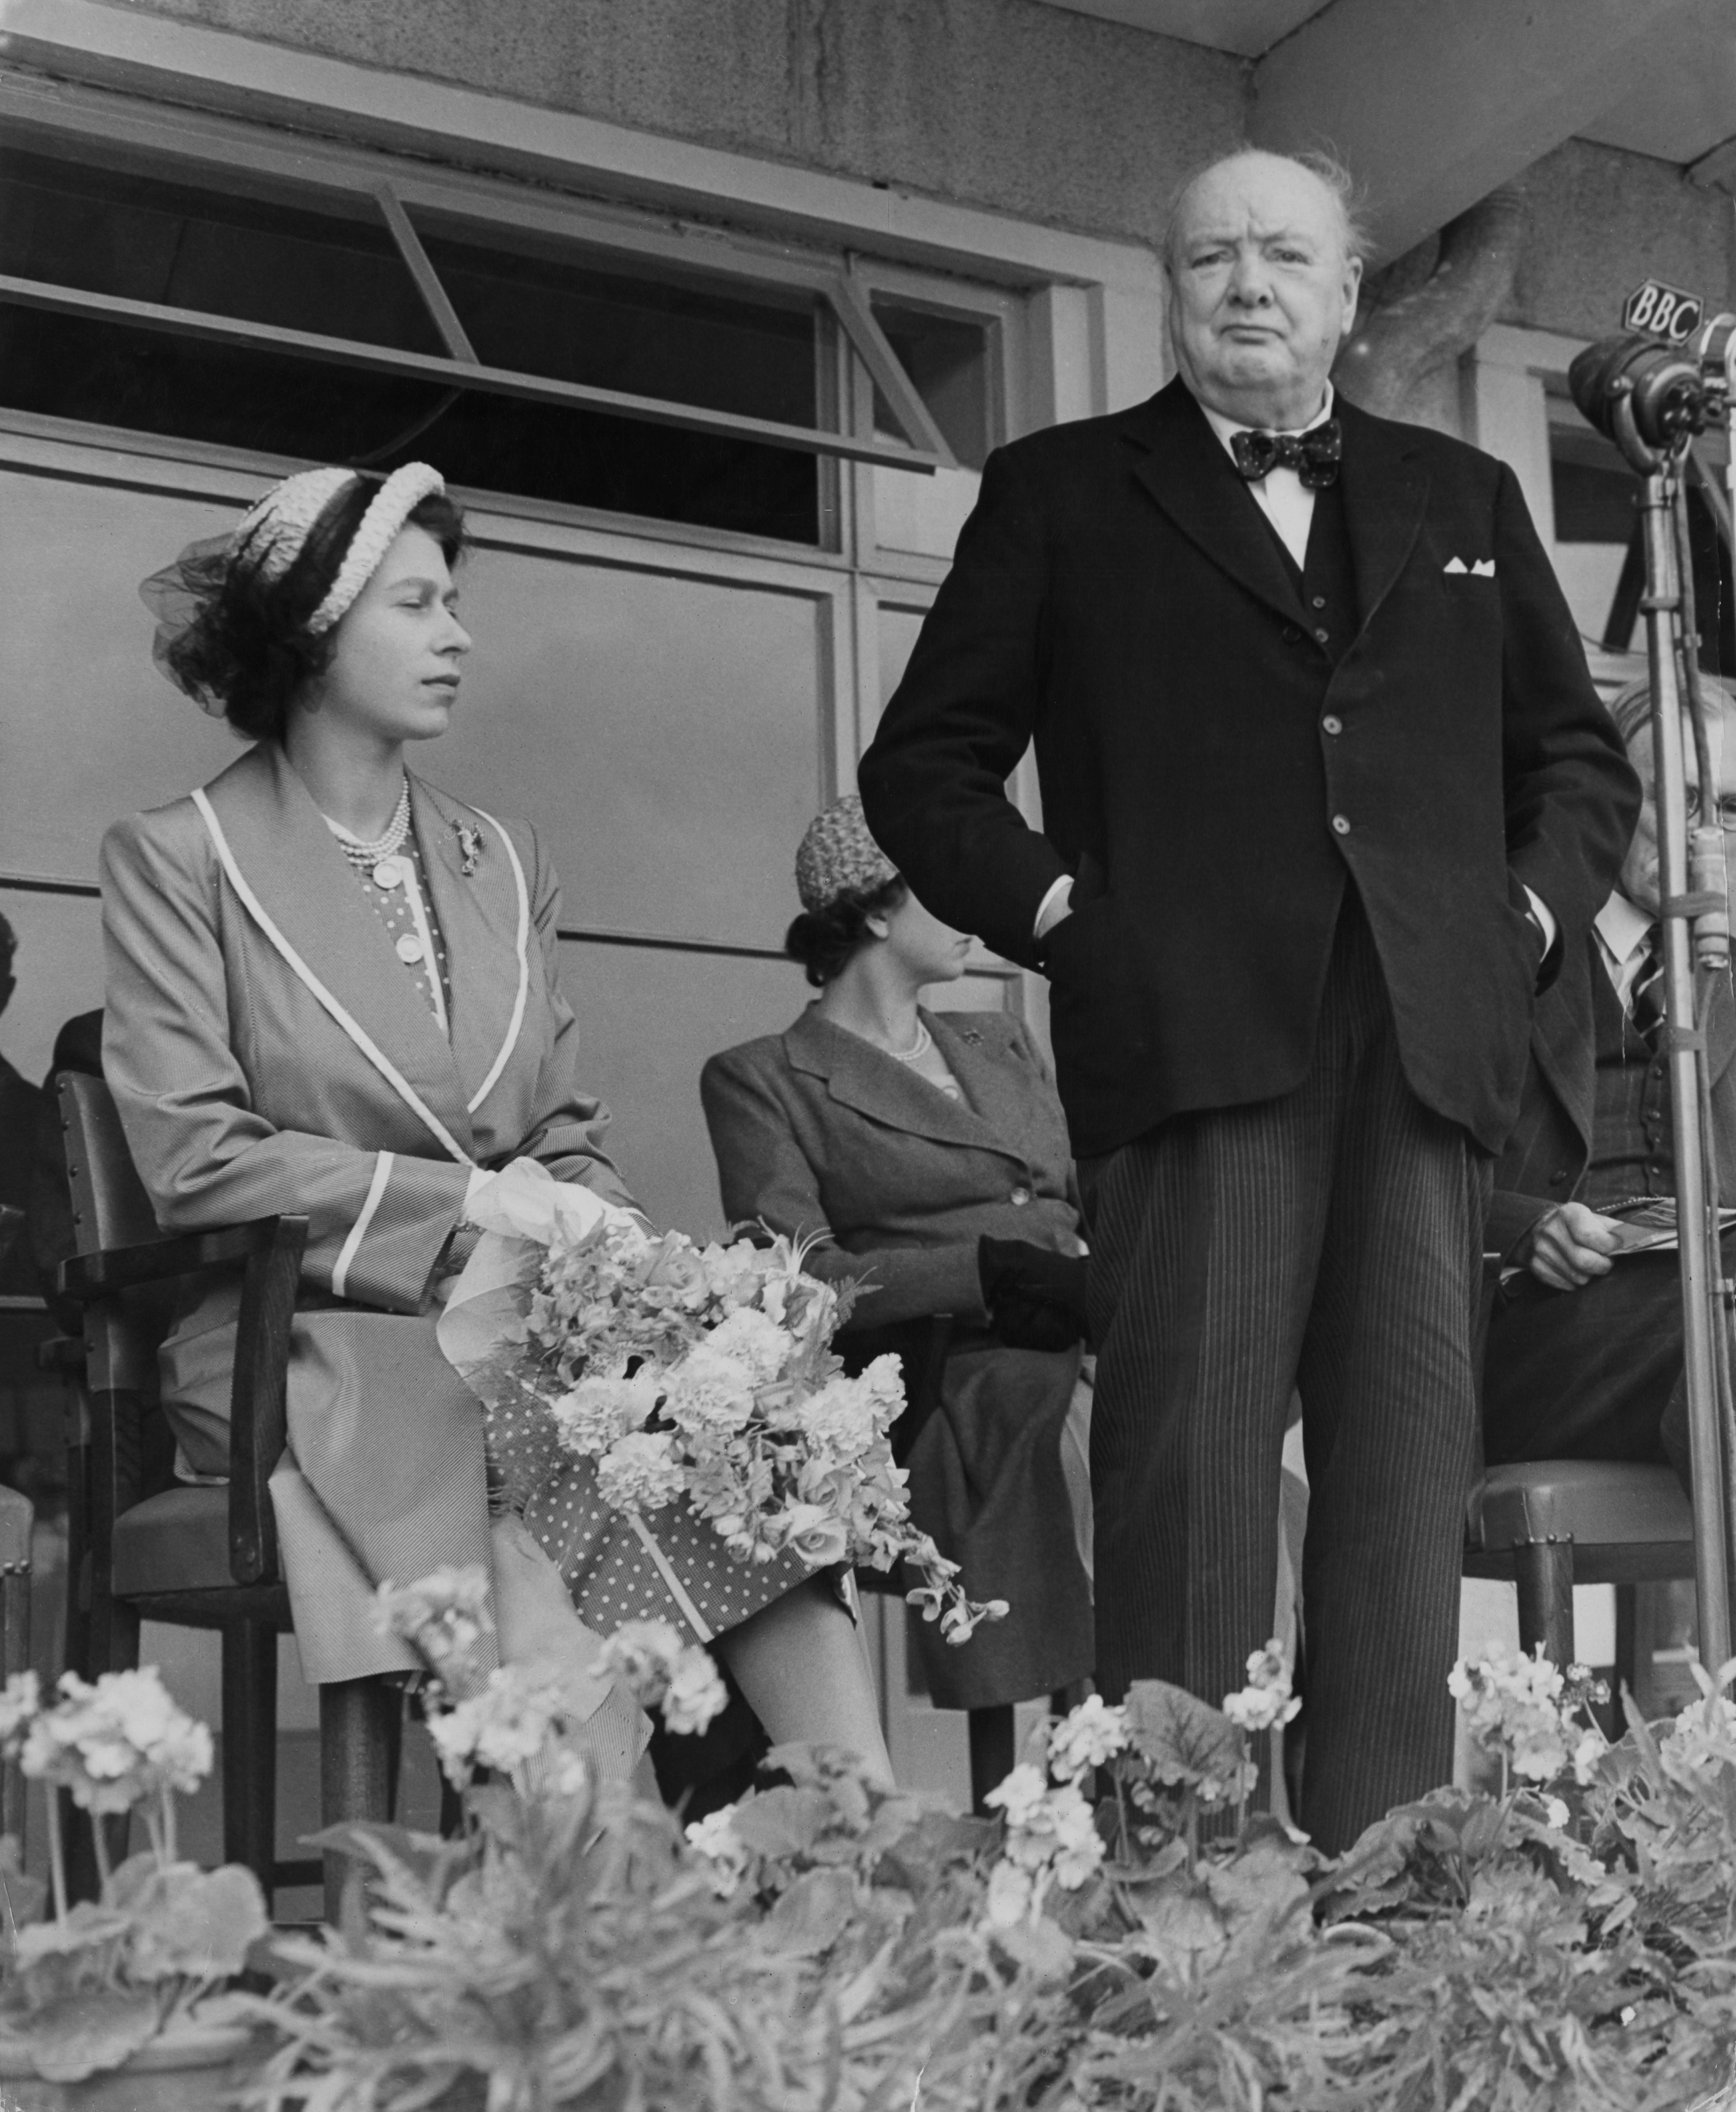 Il Primo Ministro Winston Churchill parla durante una manifestazione pubblica nel 1951, alla presenza della Principessa Elisabetta. E' noto lo stretto legame tra i due, Churchill così definisce la futura Regina a soli due anni: "Che carattere...ha un’aria di autorità e riflessività stupefacente per una bambina"